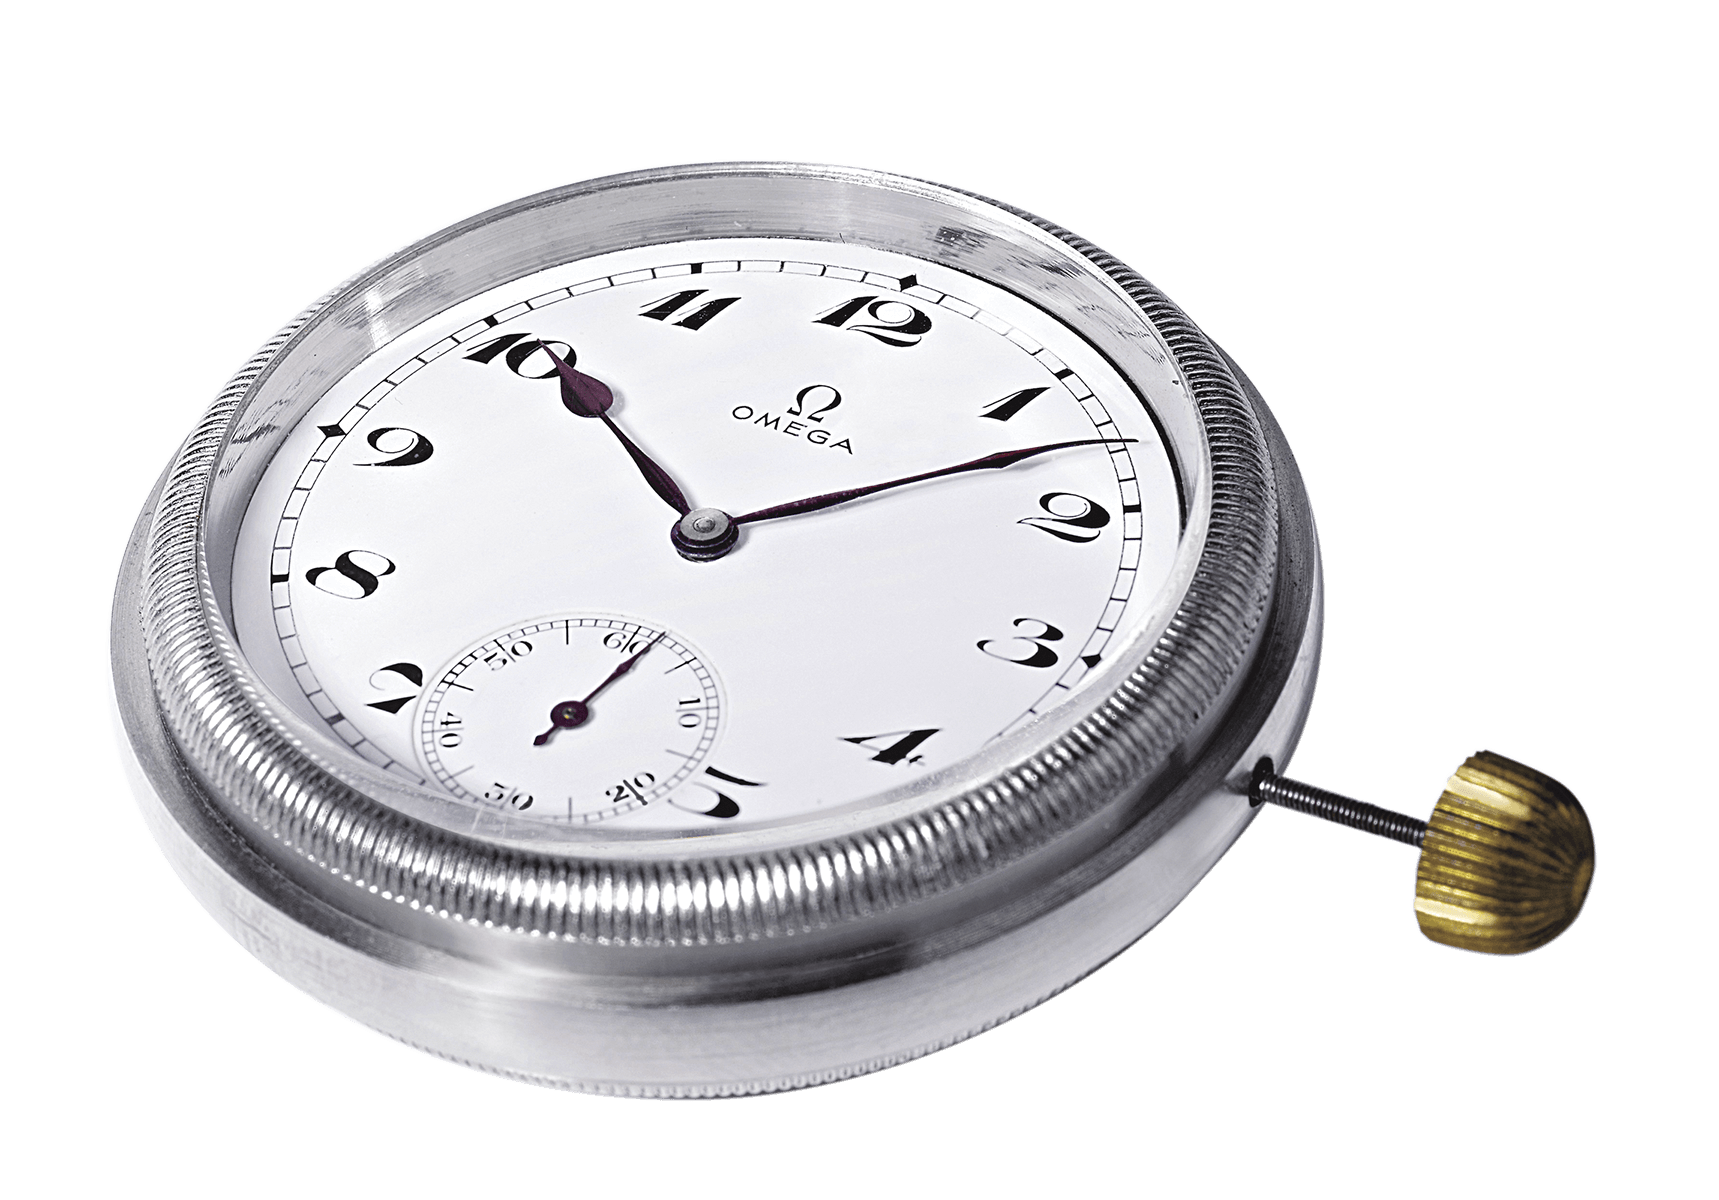 제네바 천문대에서 개최된 대회에서 인정받은 오메가 시계